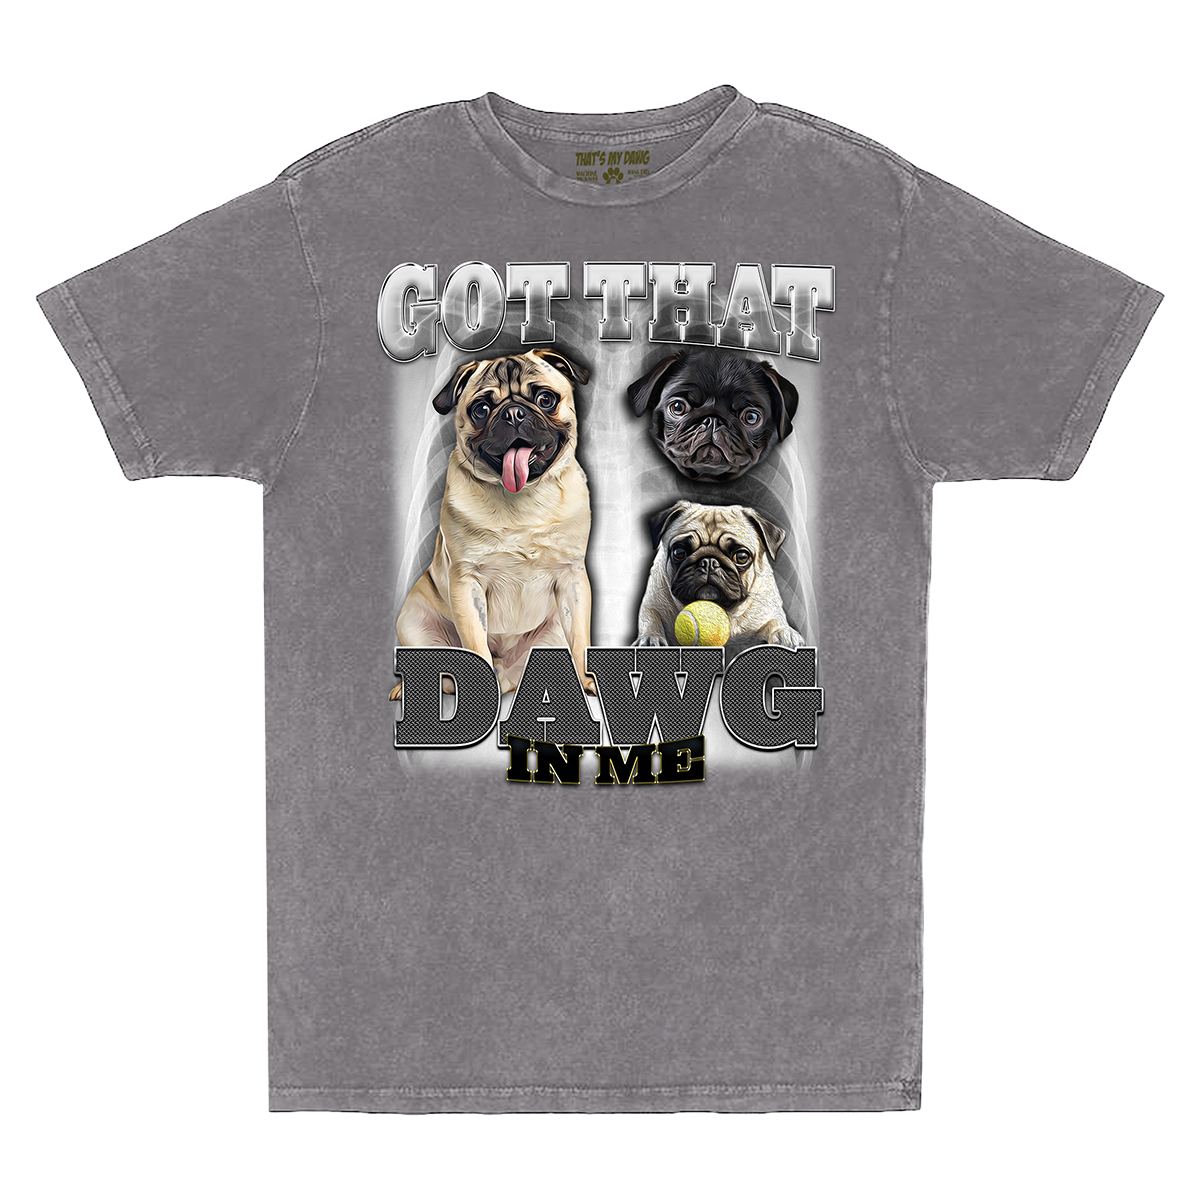 90's Style Pug Vintage T-Shirts (Zinc)